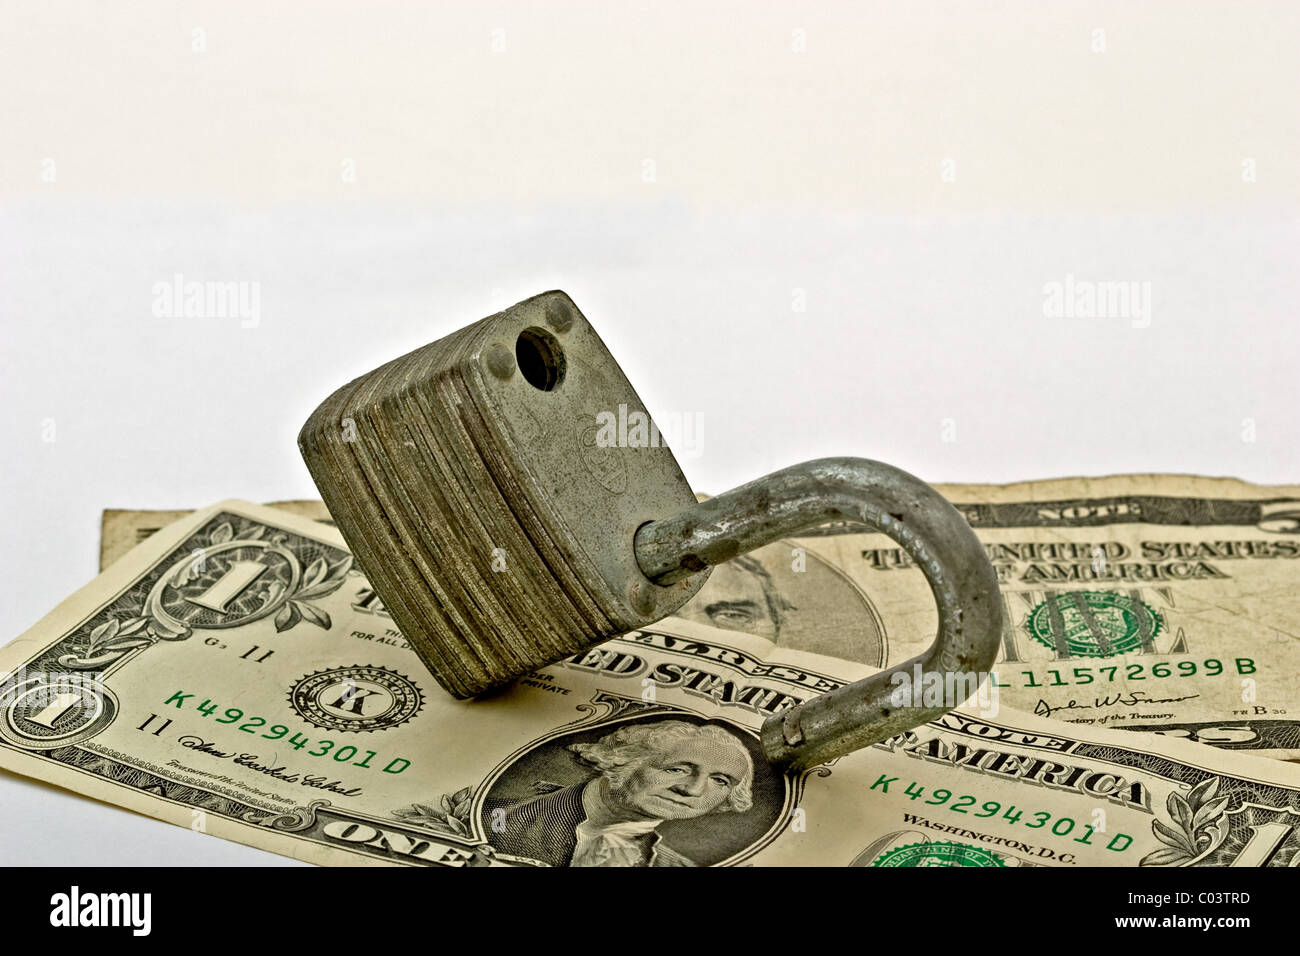 Los billetes de dólar americano en un candado abierto Foto de stock